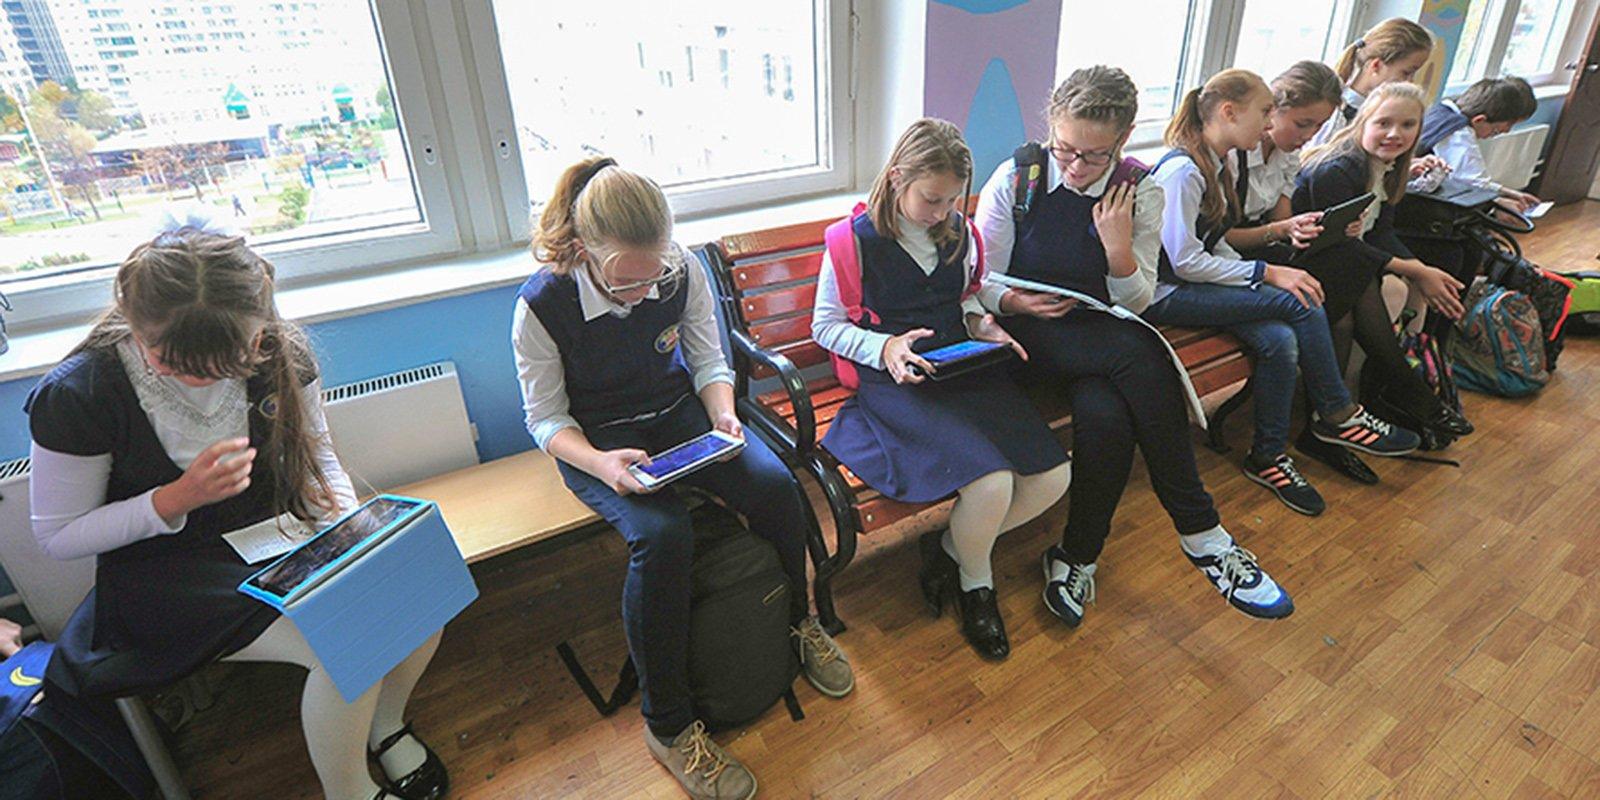 22 тысячи уроков: как получить грант за развитие «Московской электронной школы»